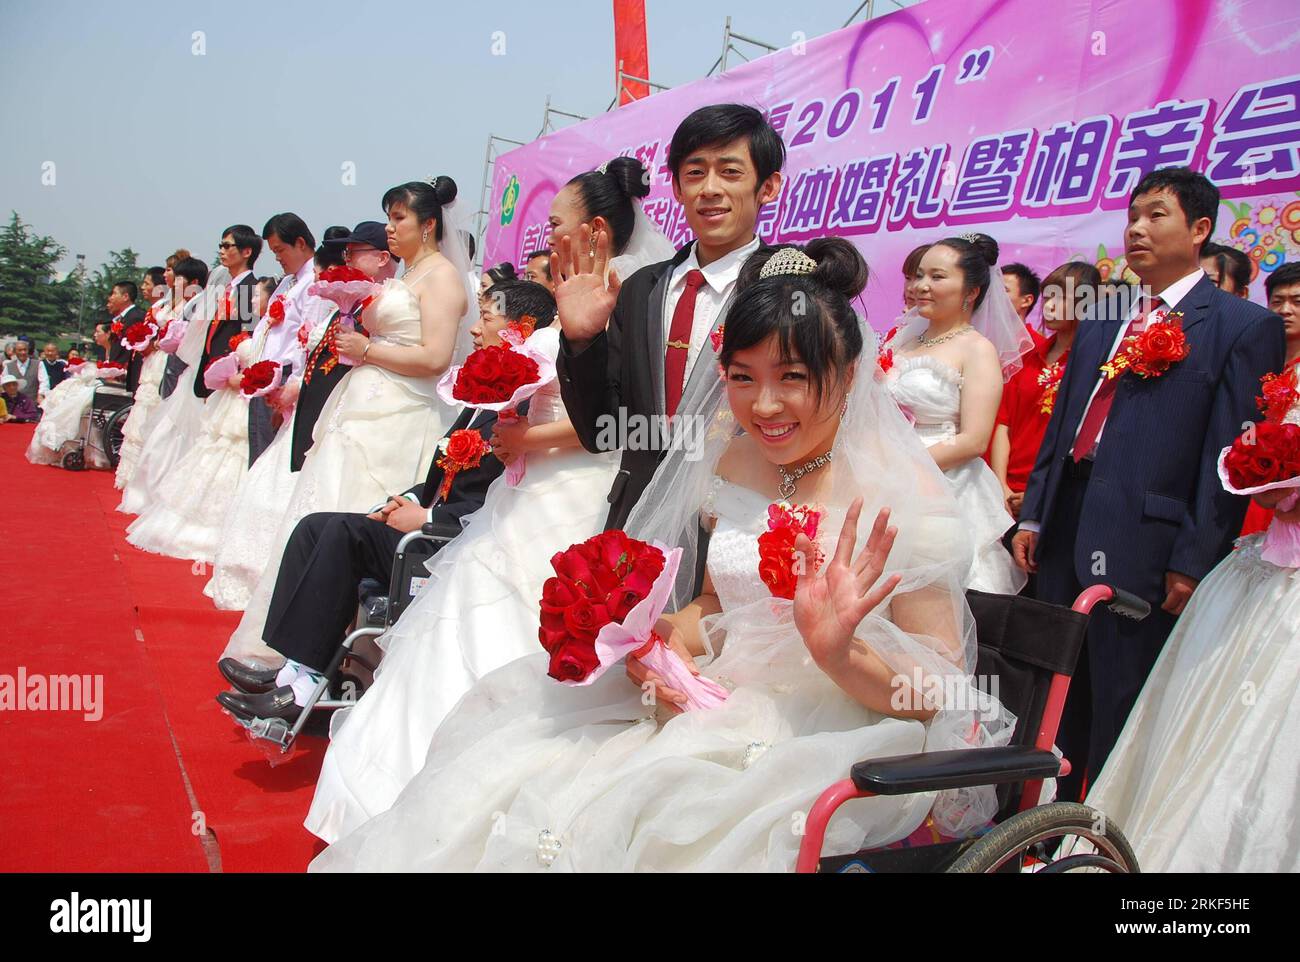 Bildnummer : 55348612 Datum : 15.05.2011 Copyright : imago/Xinhua (110515) -- WEIFANG, 15 mai 2011 (Xinhua) -- des couples prennent part à un mariage de masse pour handicapés à Weifang, dans la province du Shandong de l'est de la Chine, le 15 mai 2011. Le premier mariage de masse pour les handicapés, avec la participation de 18 couples, a eu lieu dans la ville de Weifang le dimanche, la 21e Journée nationale de l'aide aux handicapés, avec pour thème l'amélioration des moyens de subsistance des handicapés, la protection des droits et des intérêts des handicapés. (Xinhua/Wang Lijun)(zxh) CHINE-SHANDONG-JOURNÉE NATIONALE D'ASSISTANCE AUX HANDICAPÉS-MARIAGE COLLECTIF (CN) PUBLICATIONxNO Banque D'Images